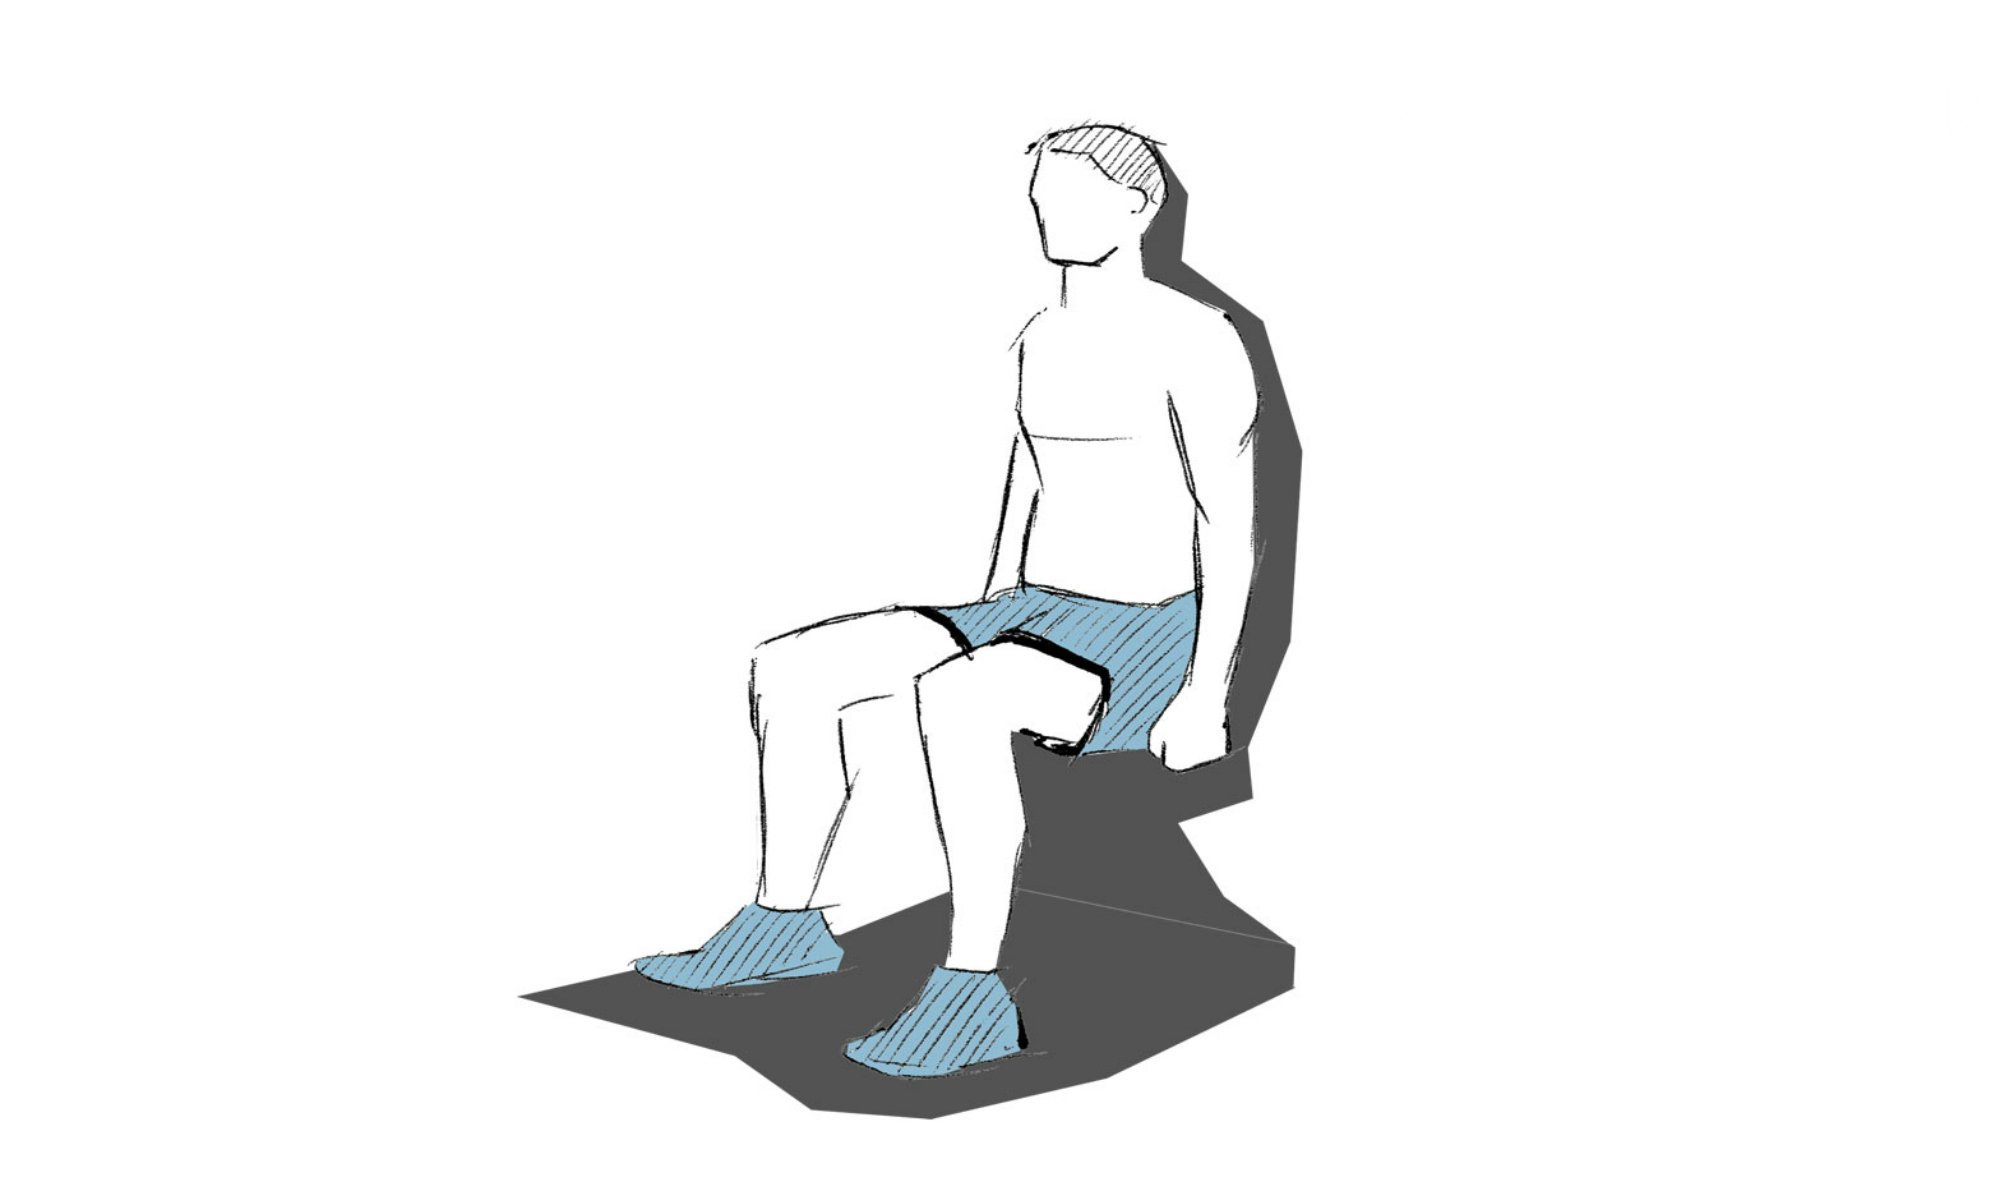 De wall sit is een oefening waarbij je met je rug tegen de muur zit.